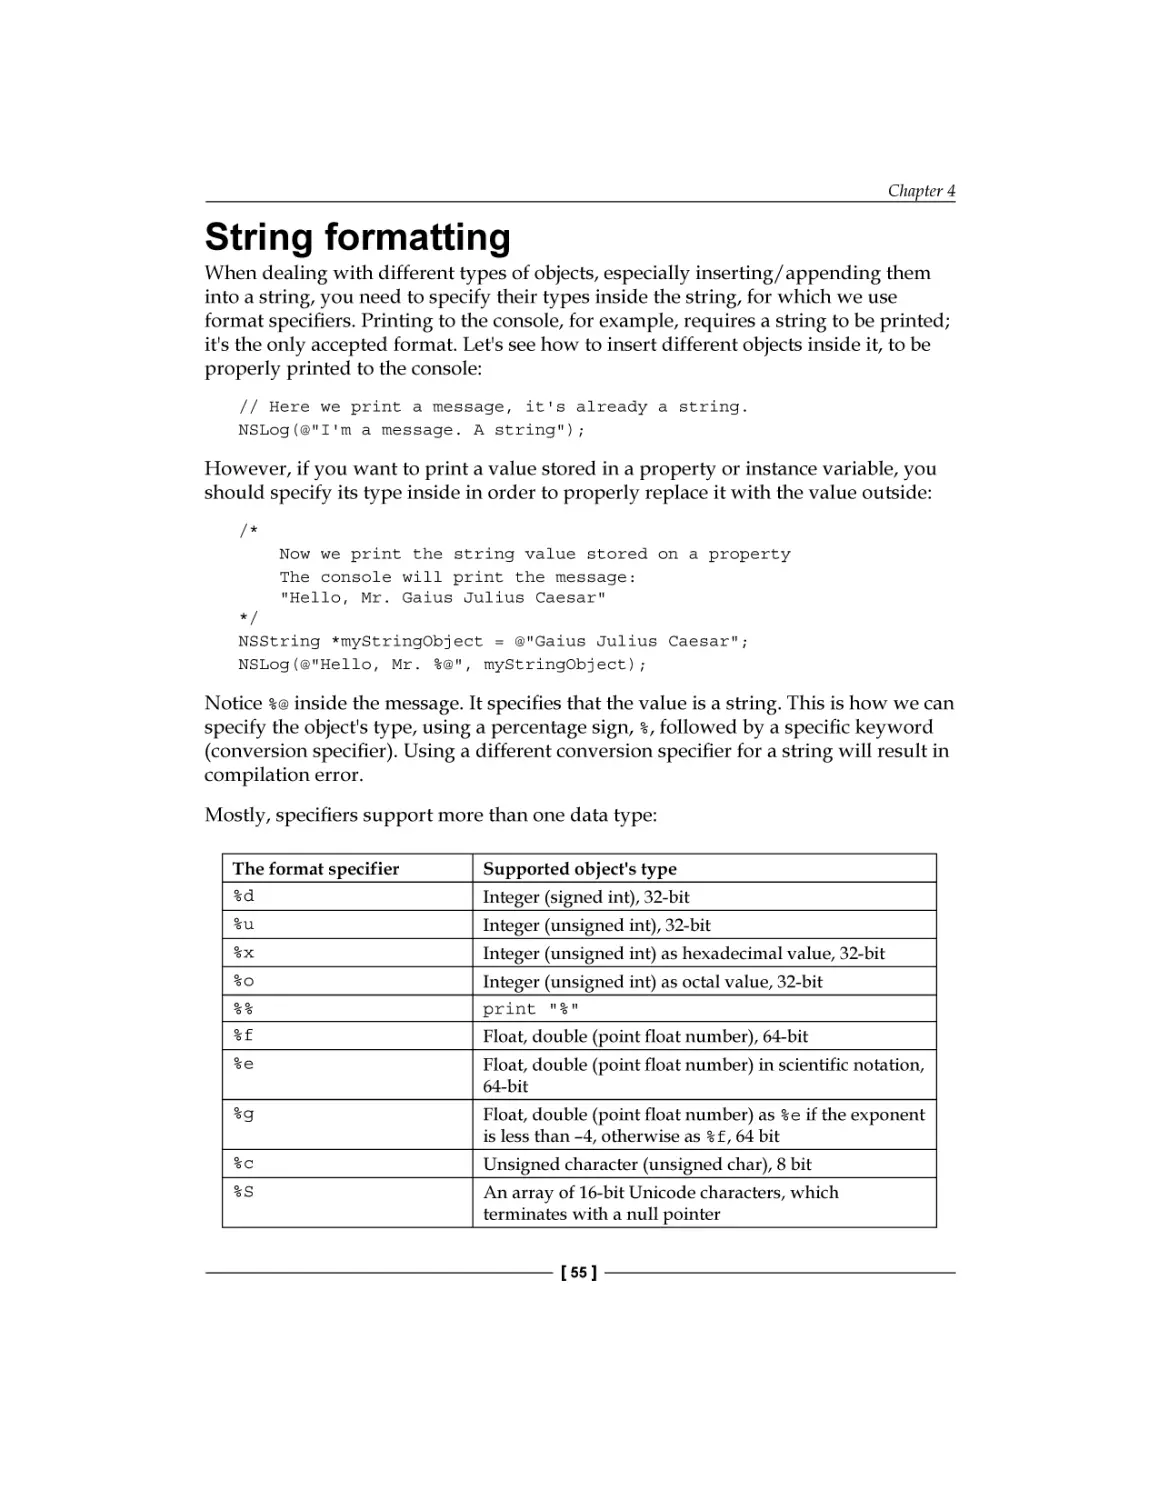 String formatting